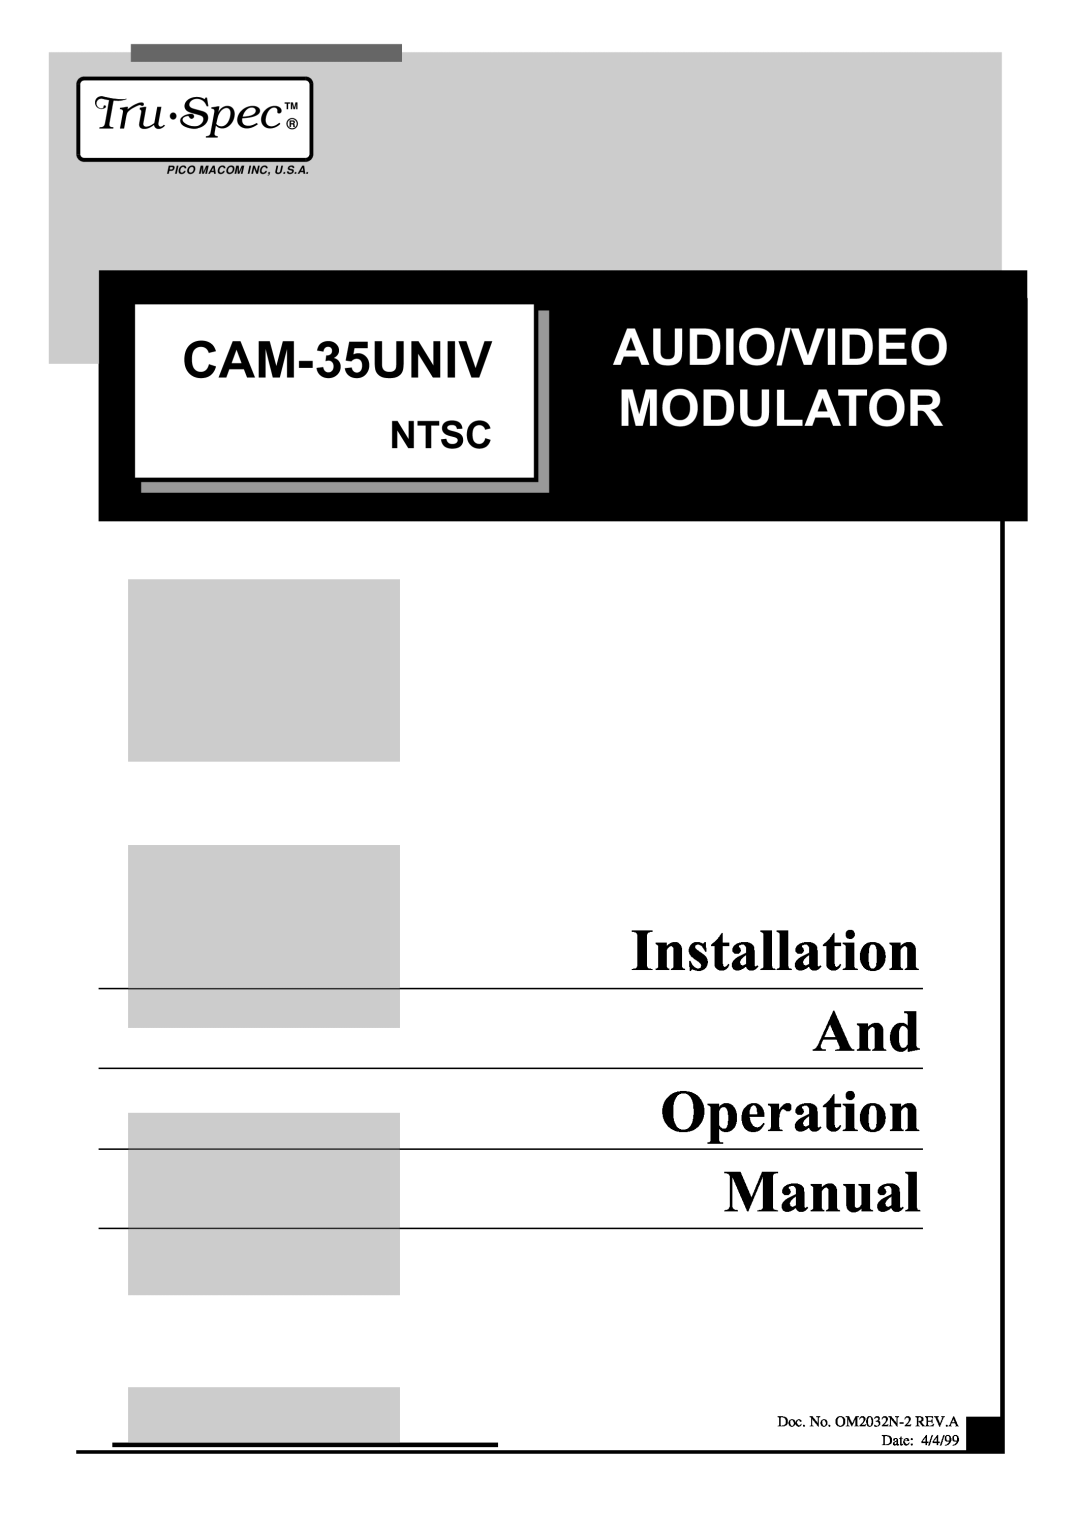 Pico Macom CAM-35UNIV operation manual Audio/Video Modulator, Tru Spec, Ntsc, Pico Macom Inc, U.S.A 